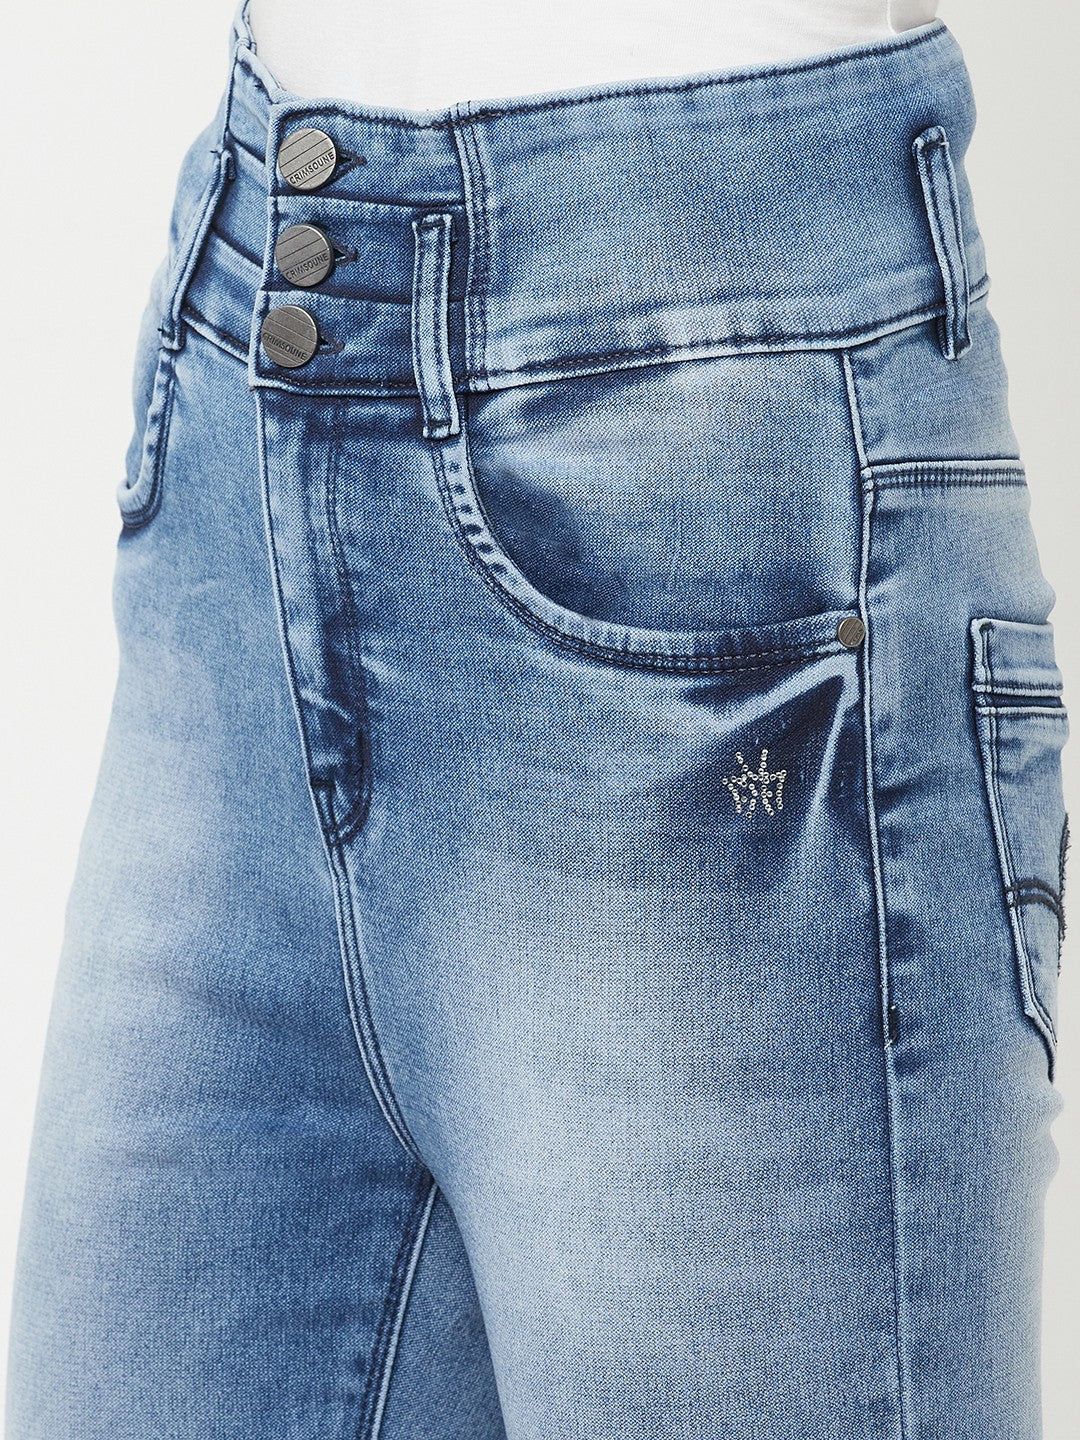 Navy Blue High Waist Jeans - Women Jeans